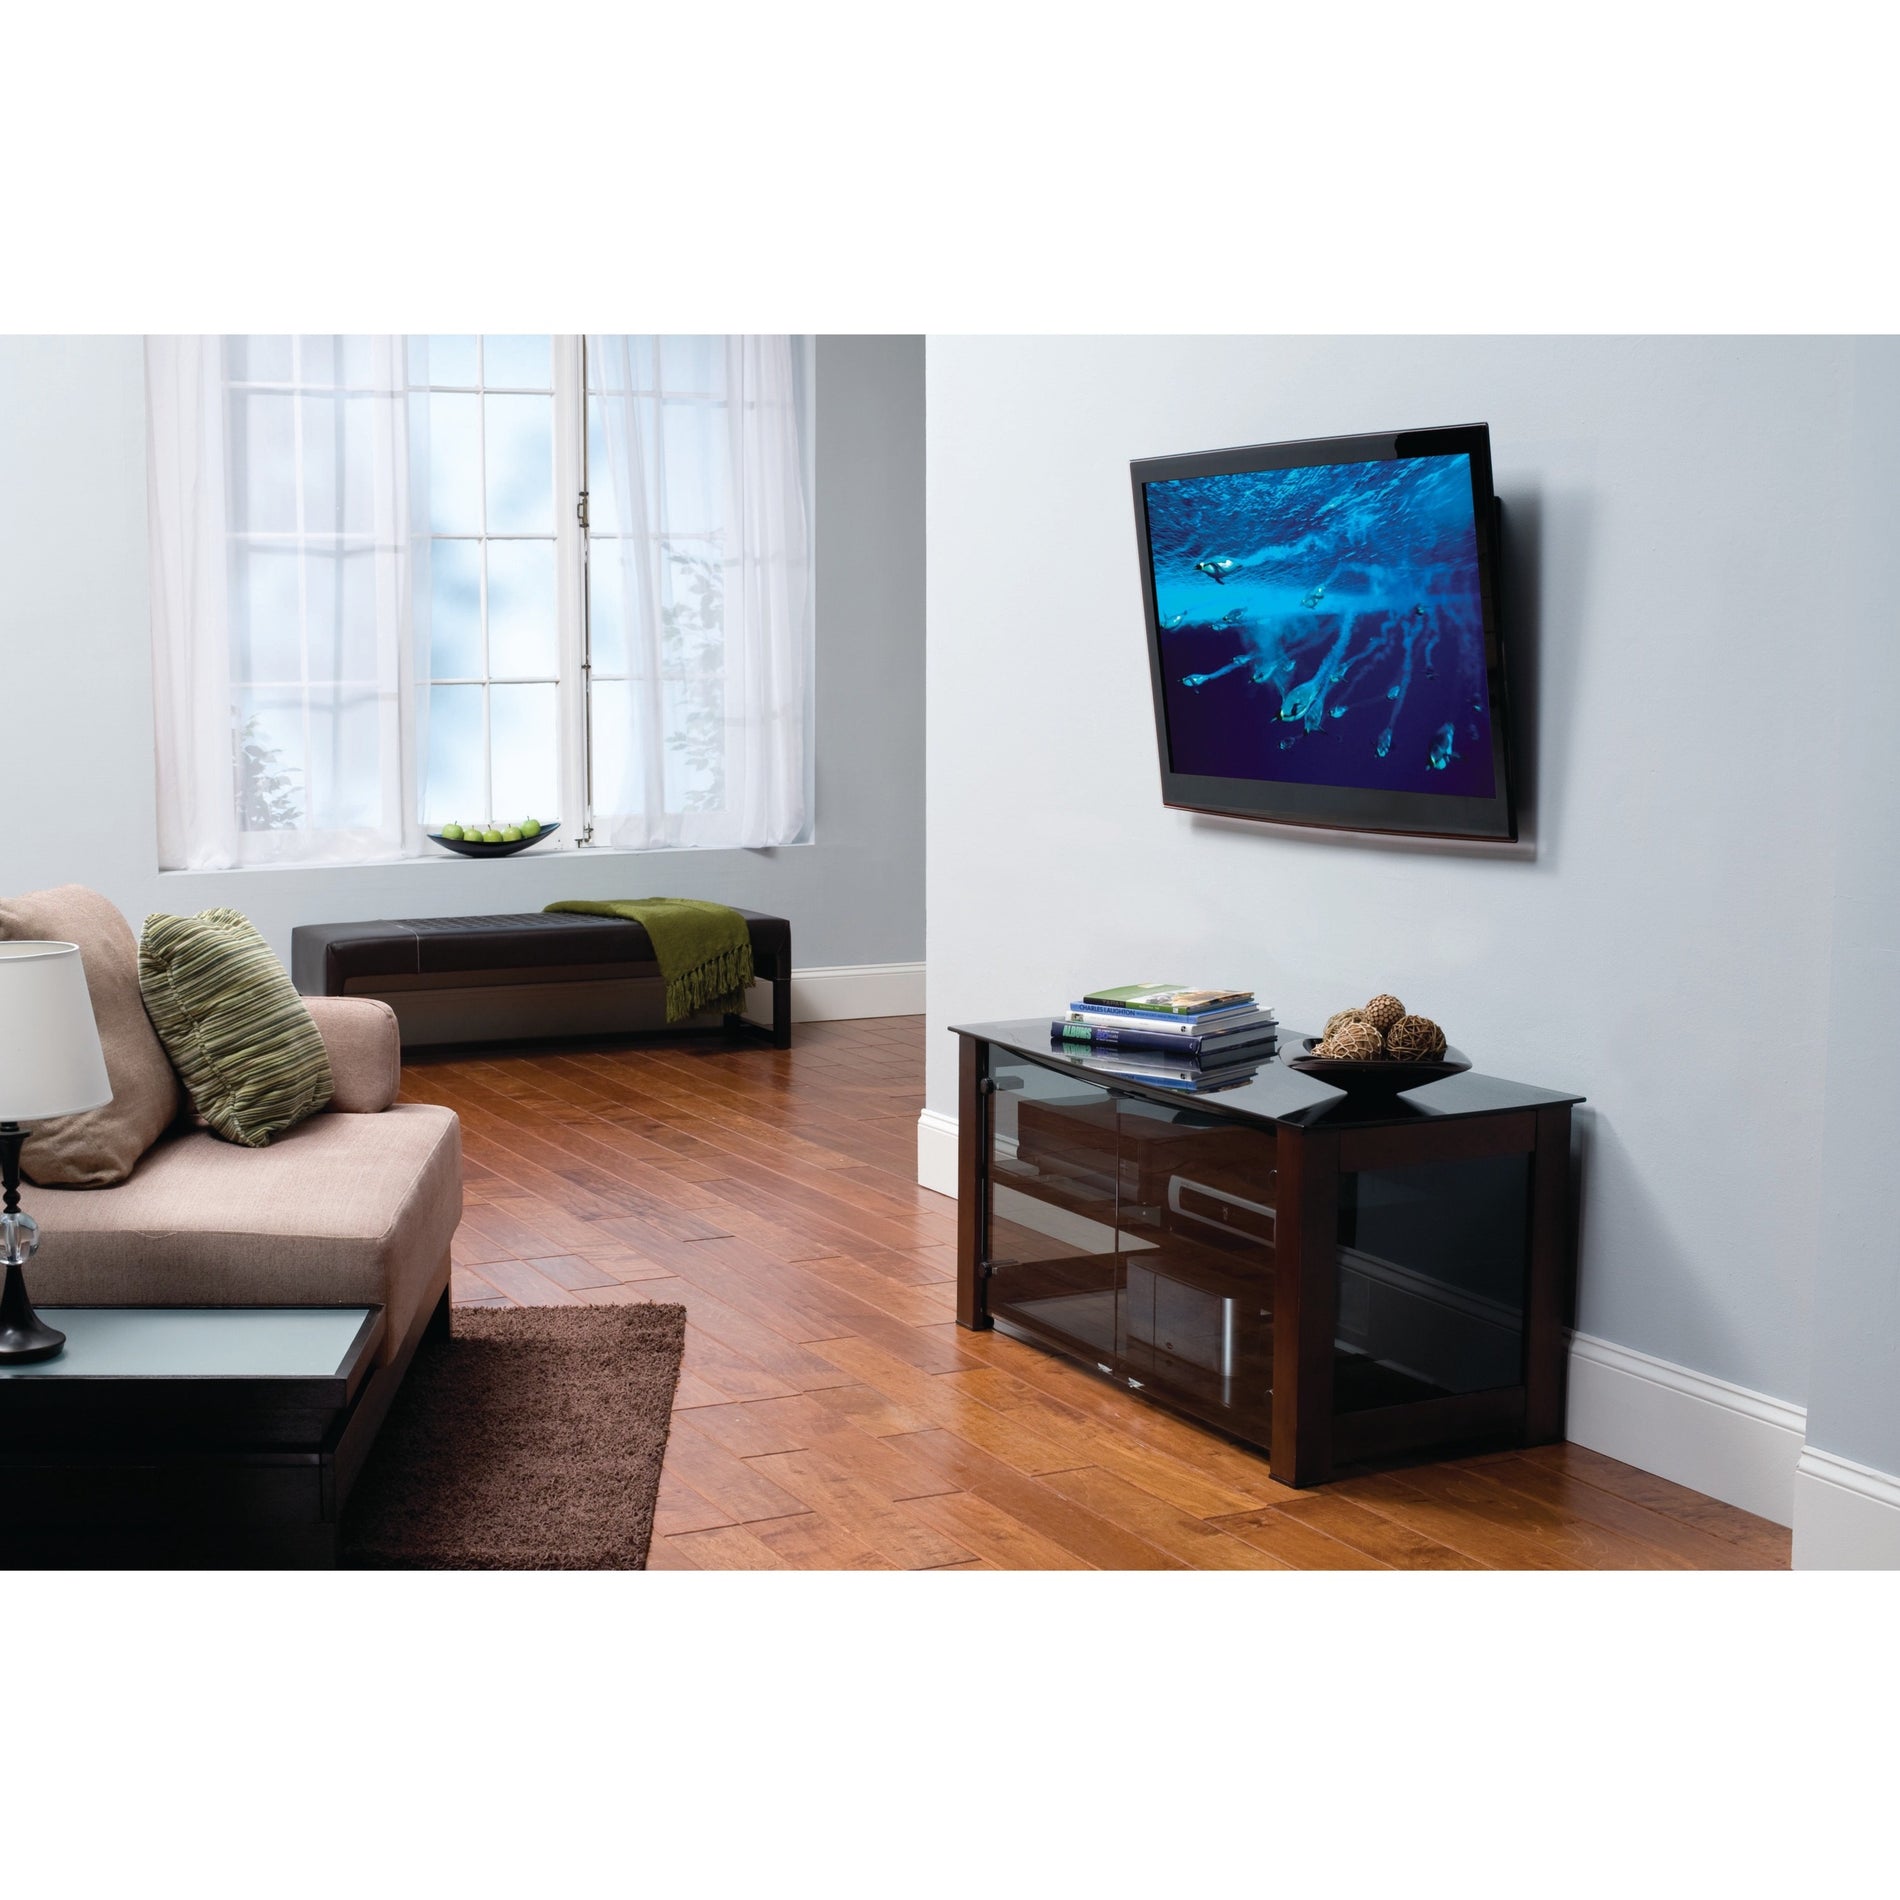 SANUS VLT16-B1 Ultra Slim Low Profile TV Mount for 40"-85" TVs, Screen Level Adjustment, -10° Tilt, Cable Management